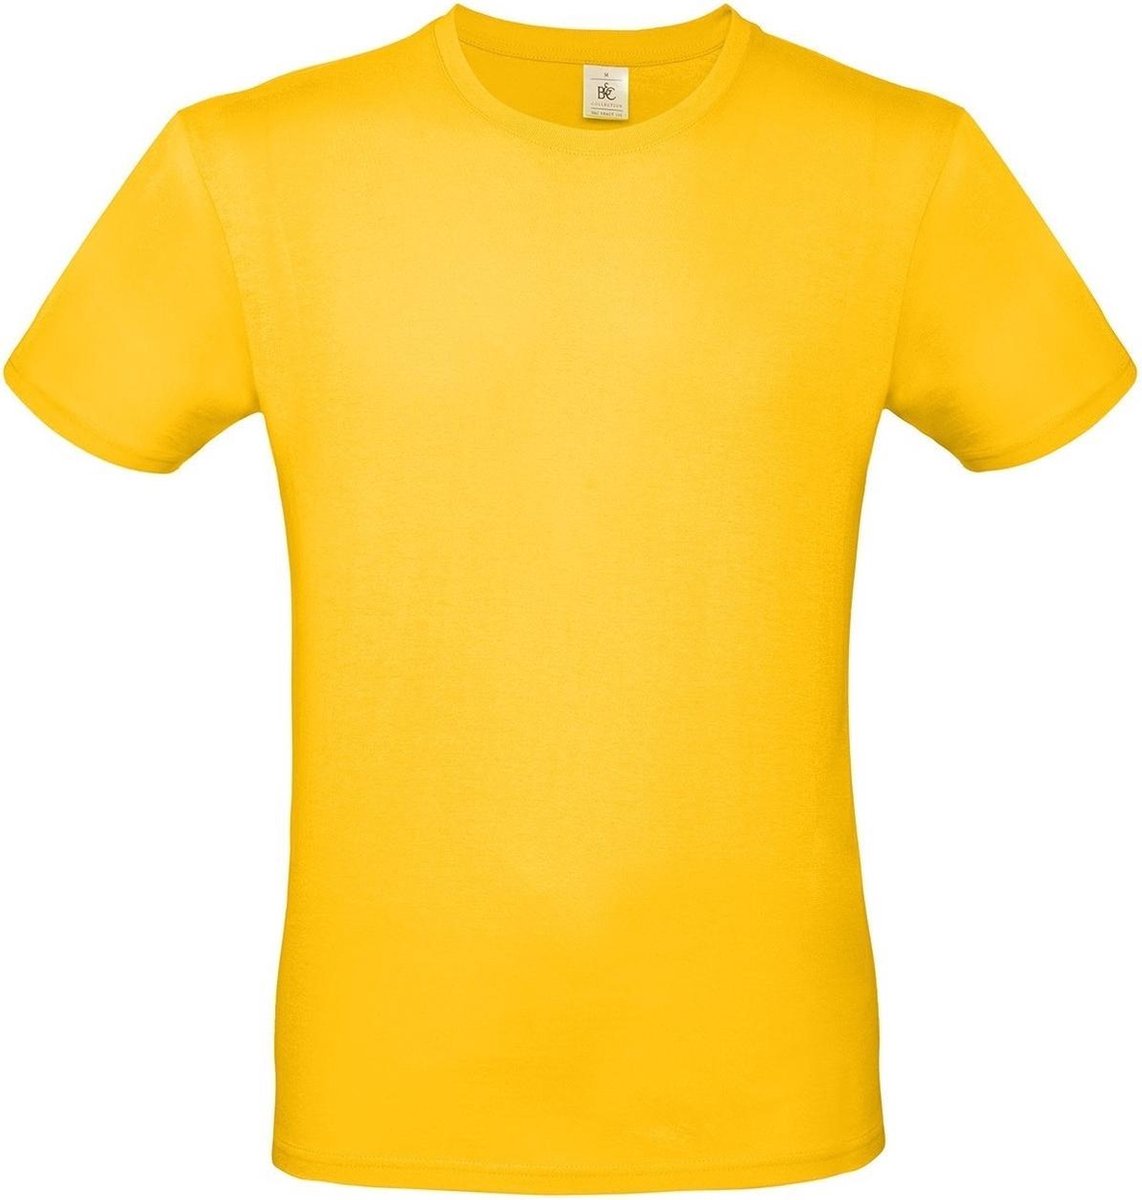 Set van 2x stuks geel basic t-shirt met ronde hals voor heren - katoen - 145 grams - gele shirts / kleding, maat: L (52)